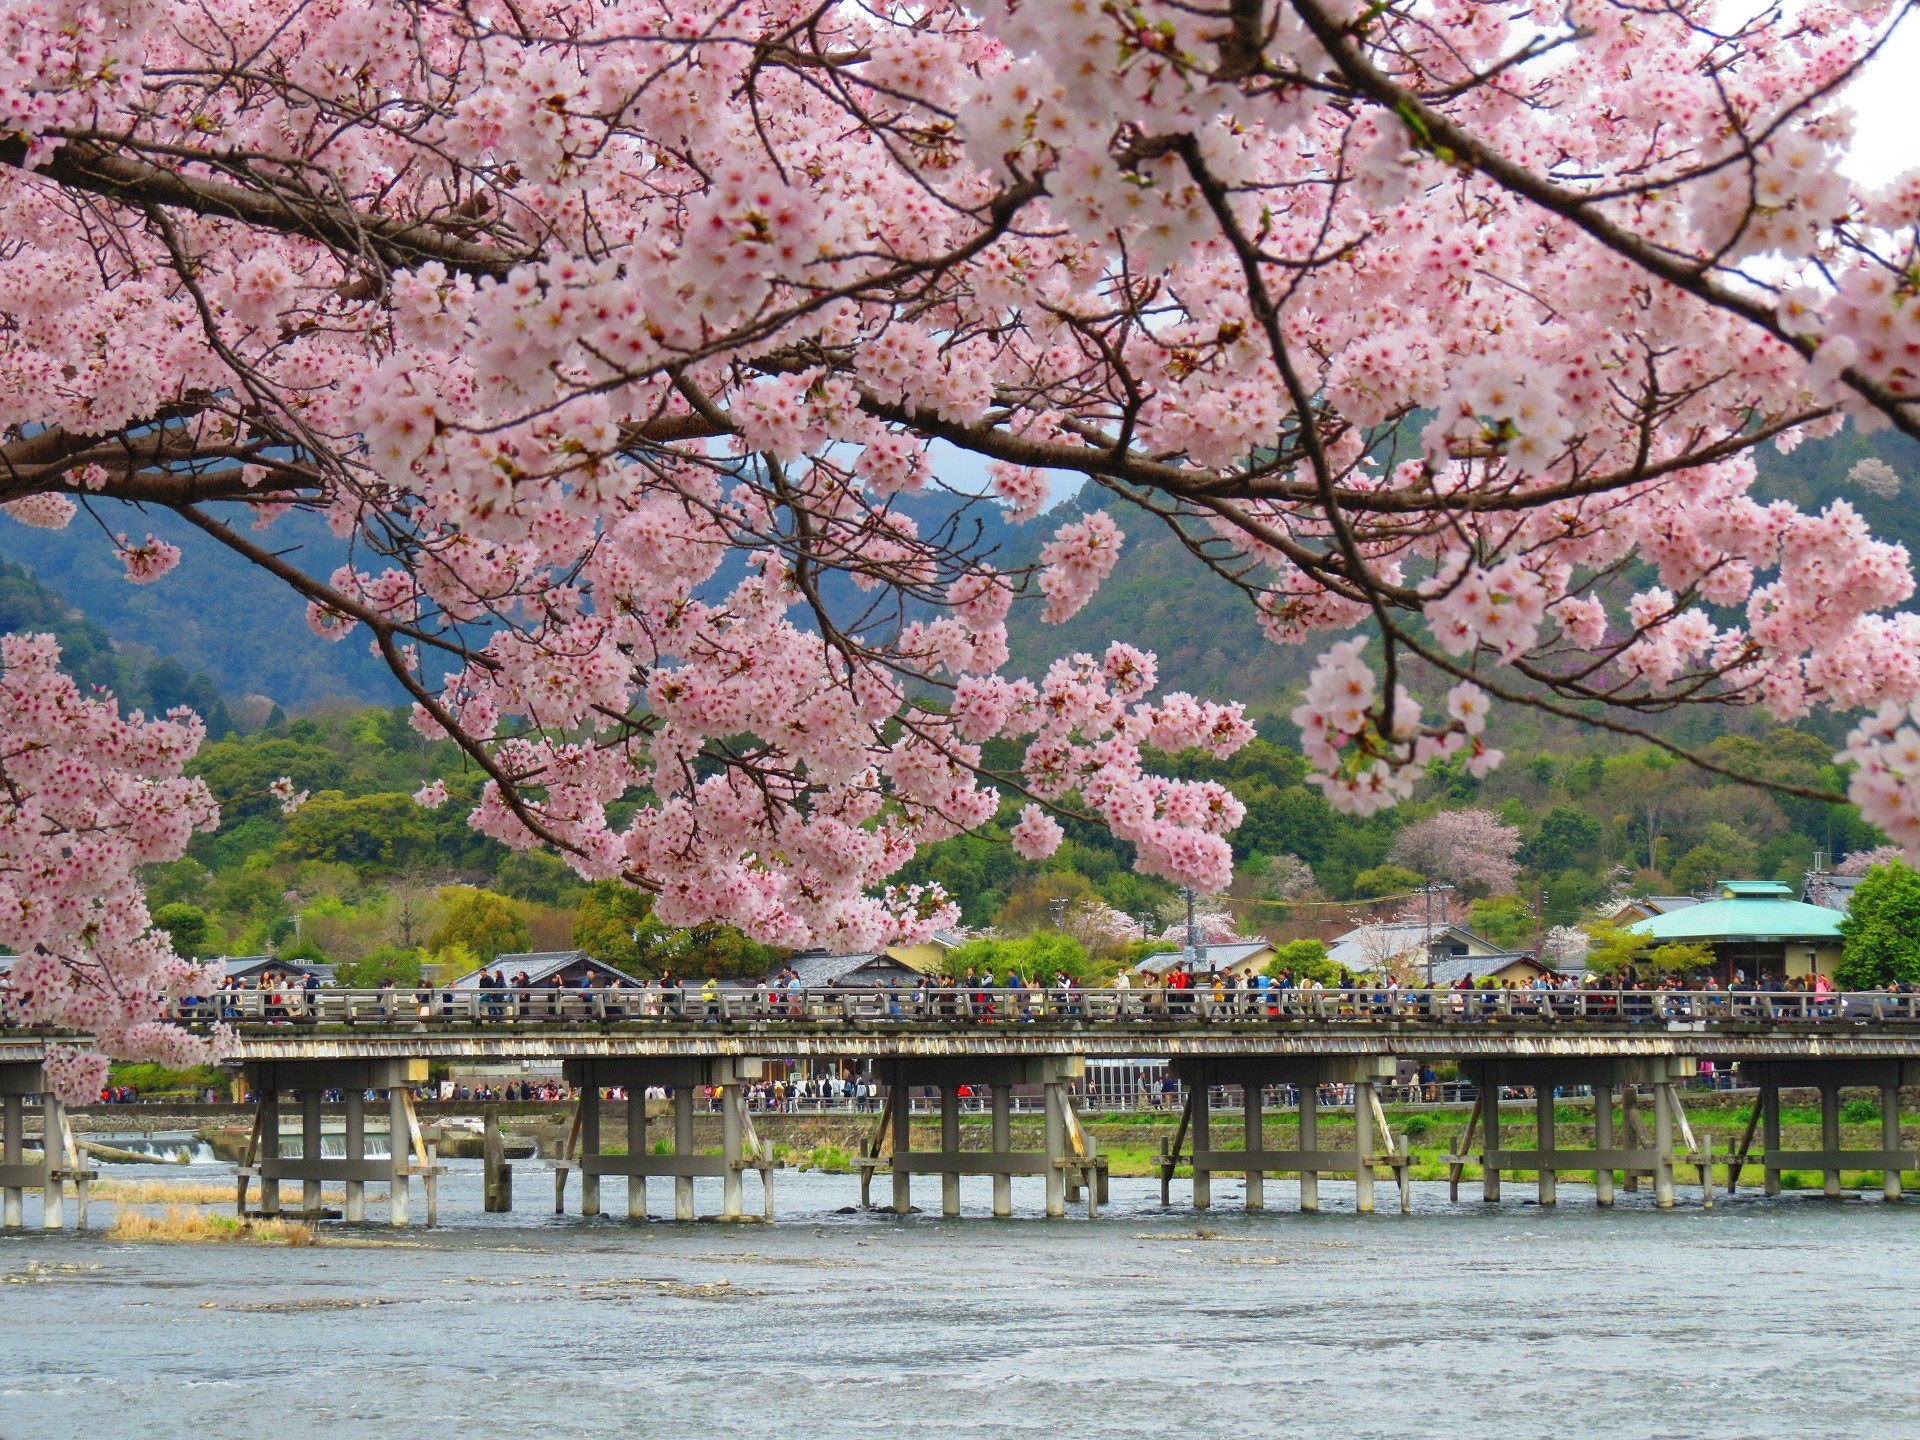 日本の風景 桜咲く嵐山渡月橋 壁紙19x1440 壁紙館